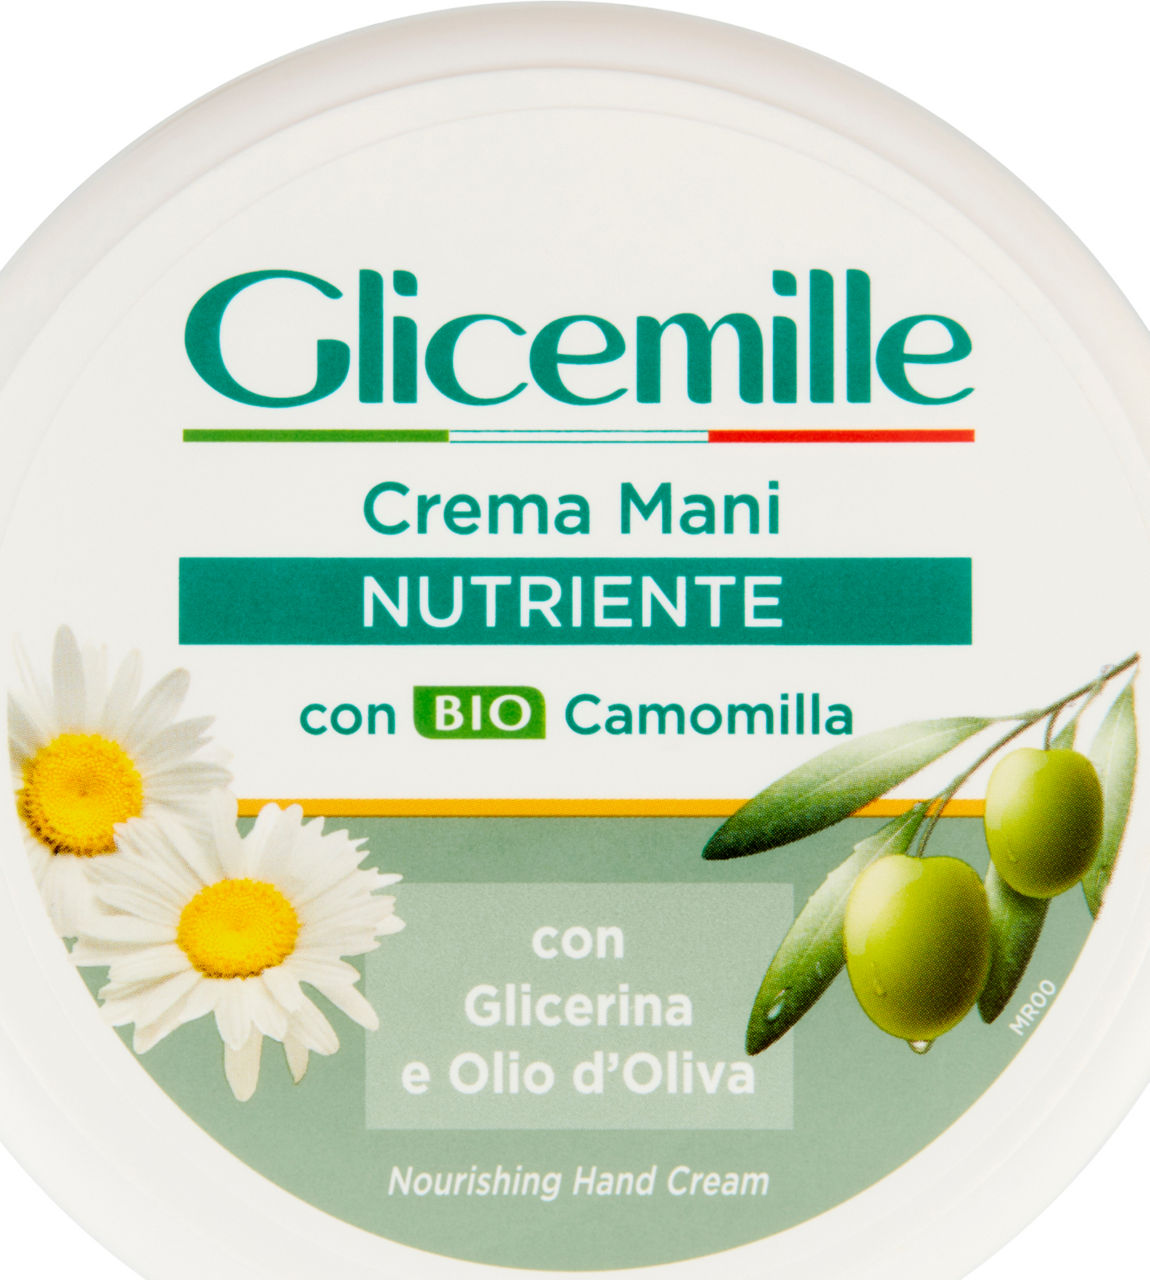 Crema mani glicemille nutriente ml 100